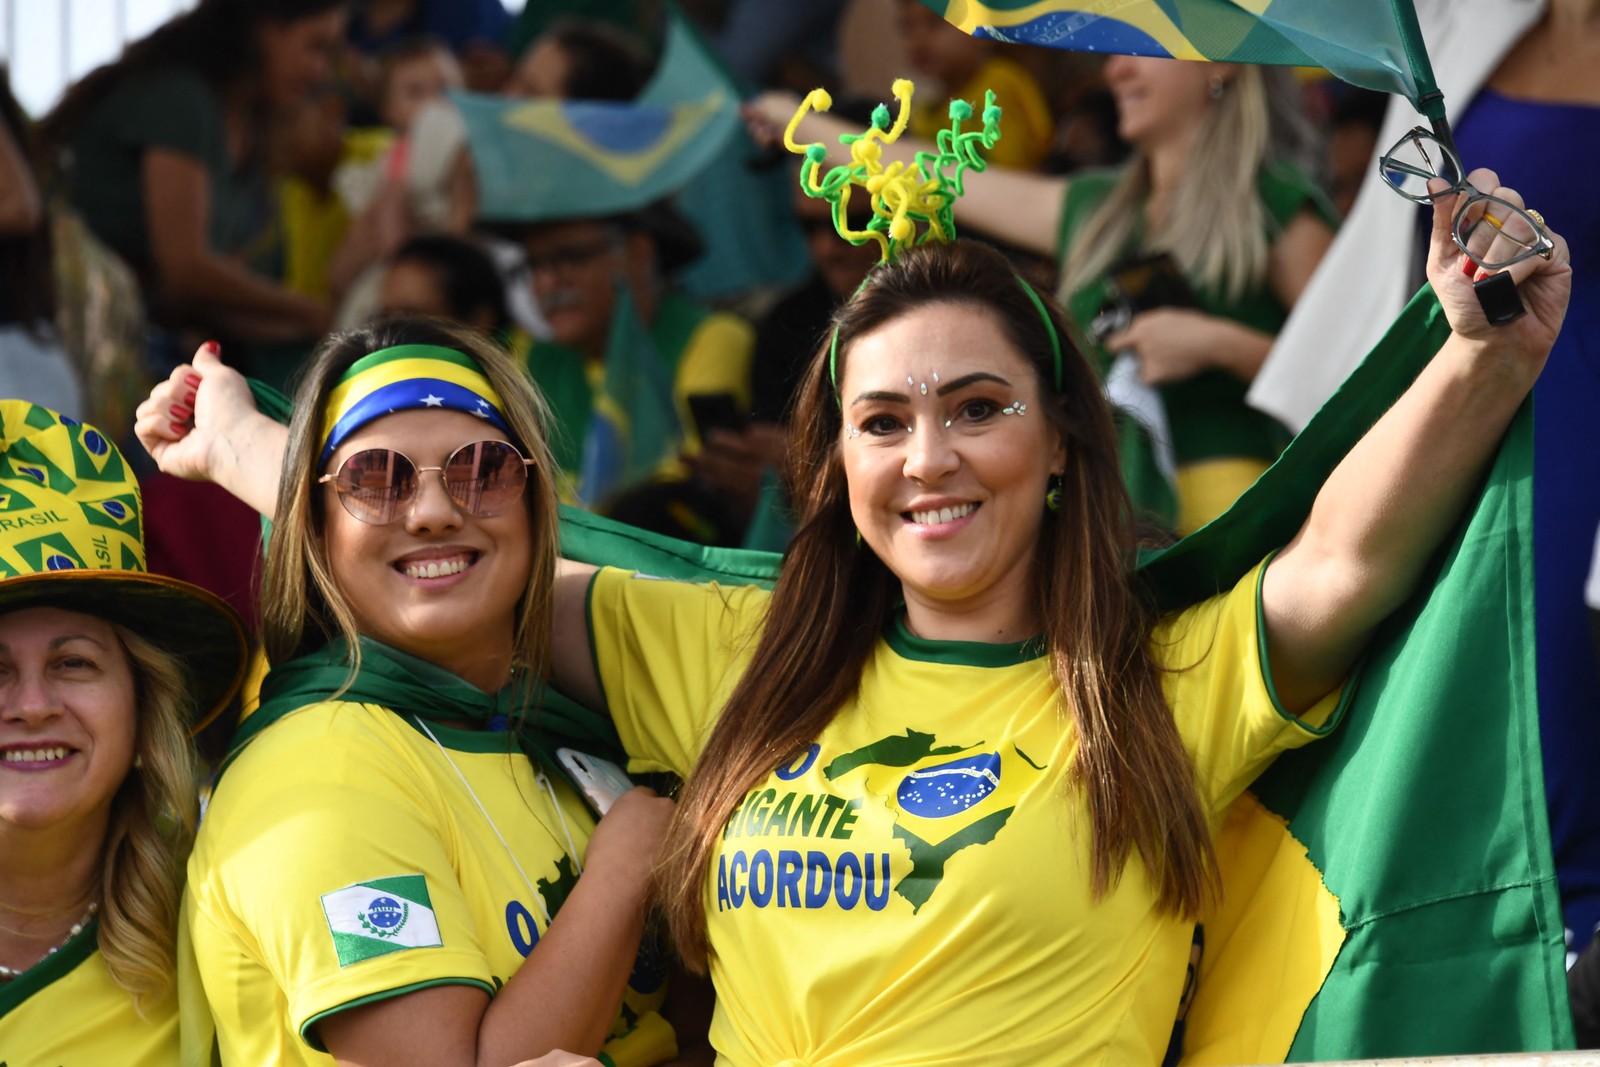 Apoiadores do presidente Bolsonaro assistem ao desfile de 7 de setembro em Brasília — Foto: Evaristo Sá/AFP